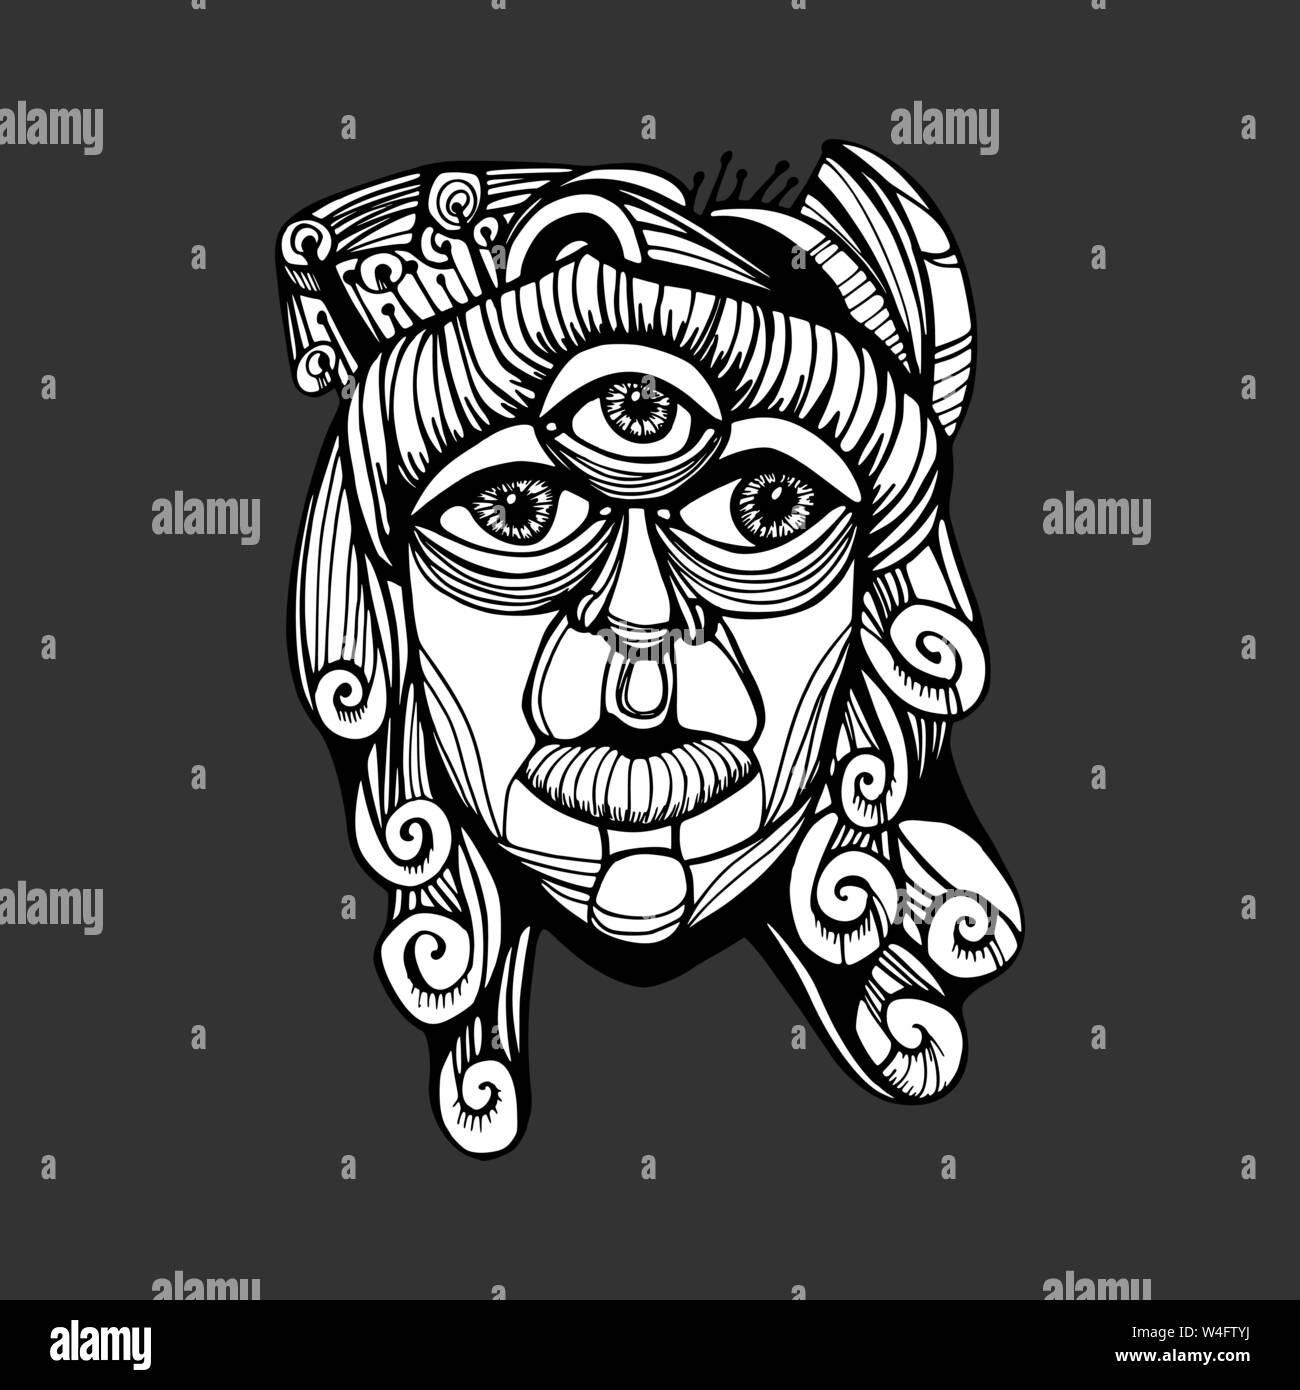 Drei-eyed Gott Shiva. Psychedelic Zeichnung. Phantasie Zeichnung Stock Vektor